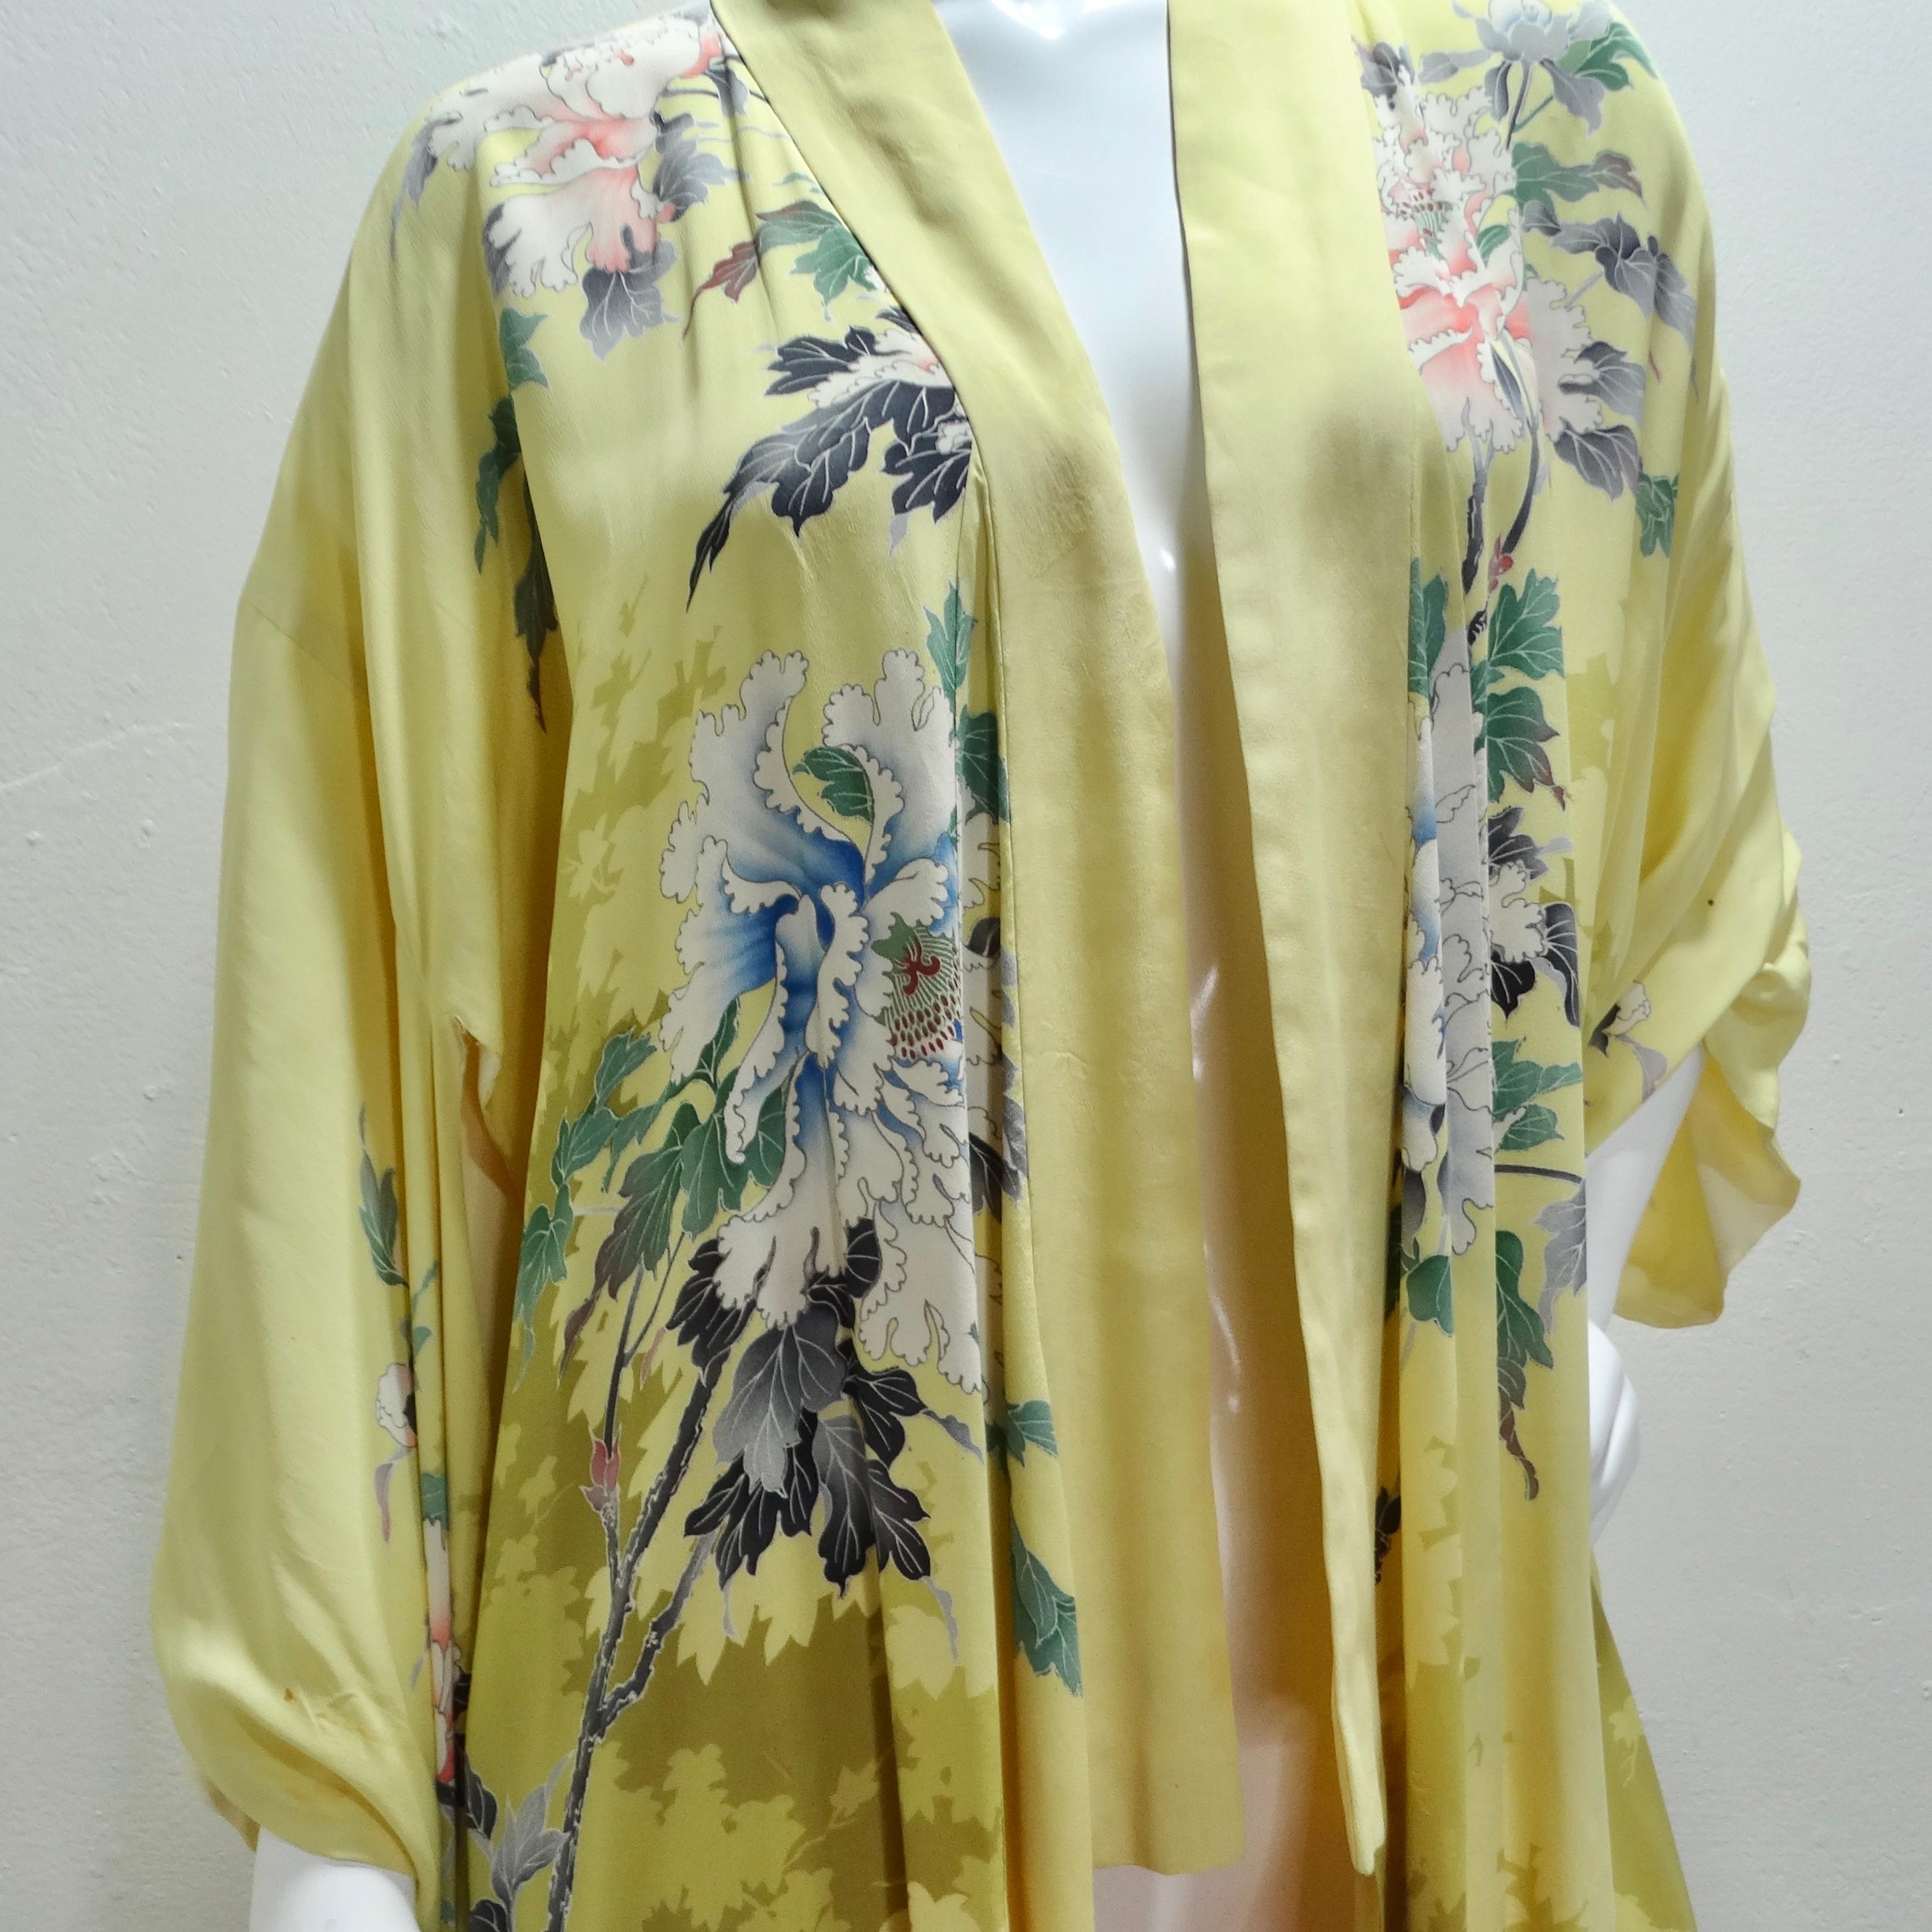 Der bestickte Seidenkimono aus den 1940er Jahren ist ein zeitloses Stück Eleganz, das die Schönheit und Raffinesse einer vergangenen Epoche verkörpert. Dieser hellneutrale gelbe Maxikimono besticht durch seinen mehrfarbigen Blumendruck aus Seide,